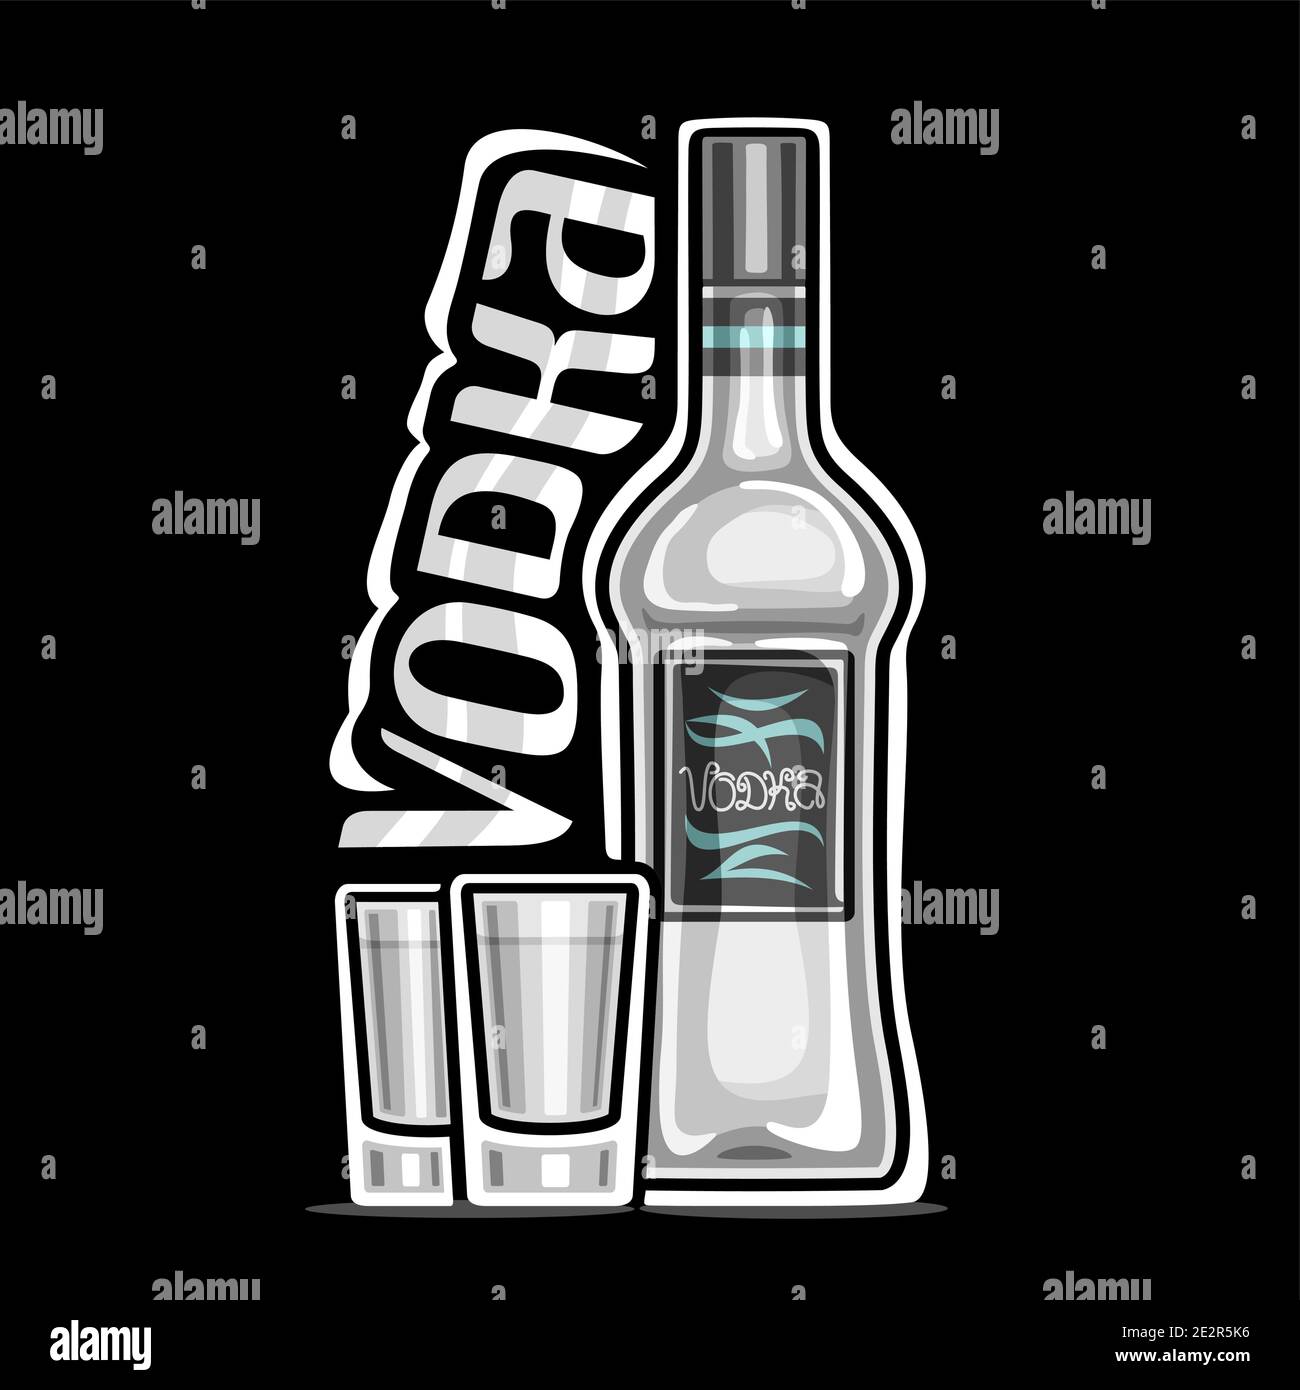 Logo Vector pour Vodka, illustration de la bouteille blanche avec étiquette décorative et 2 verres à dose complète avec vodka réfrigérée, étiquette carrée avec uniq Illustration de Vecteur